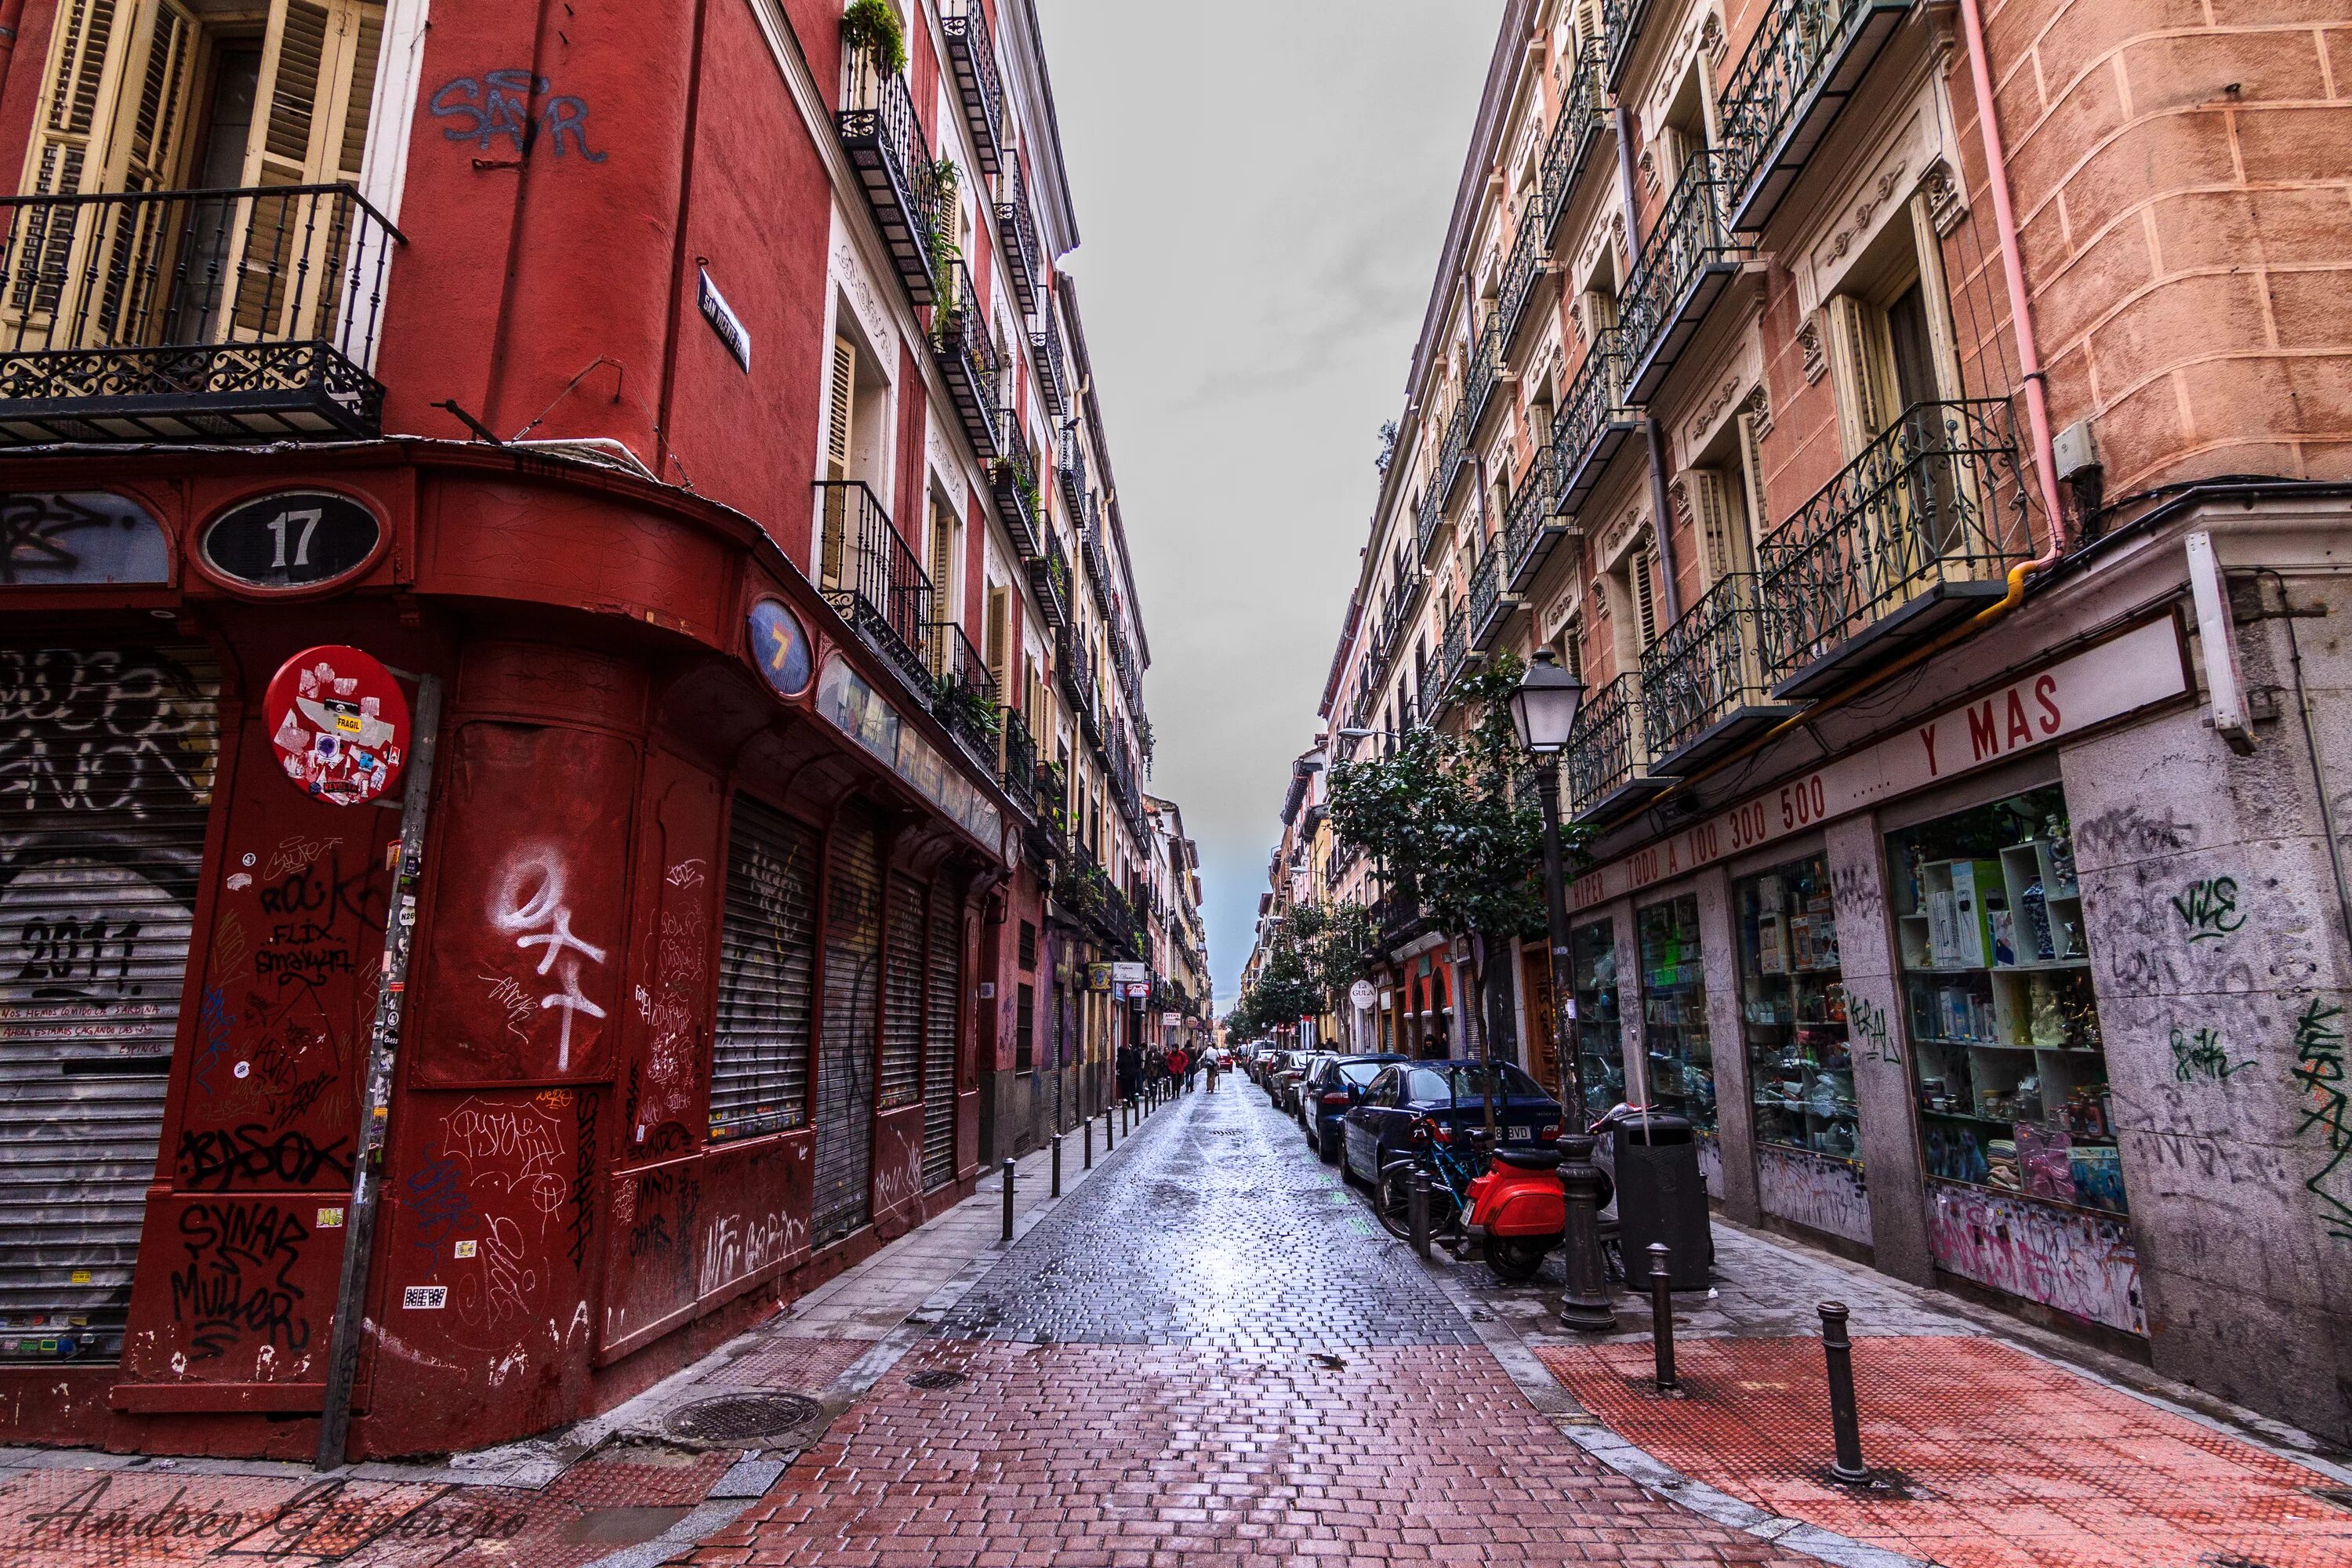 Улицы тет. Улица Урбан. Мадрид спальный район. Китайский квартал Буэнос Айрес. Старинные улочки Мадрида.